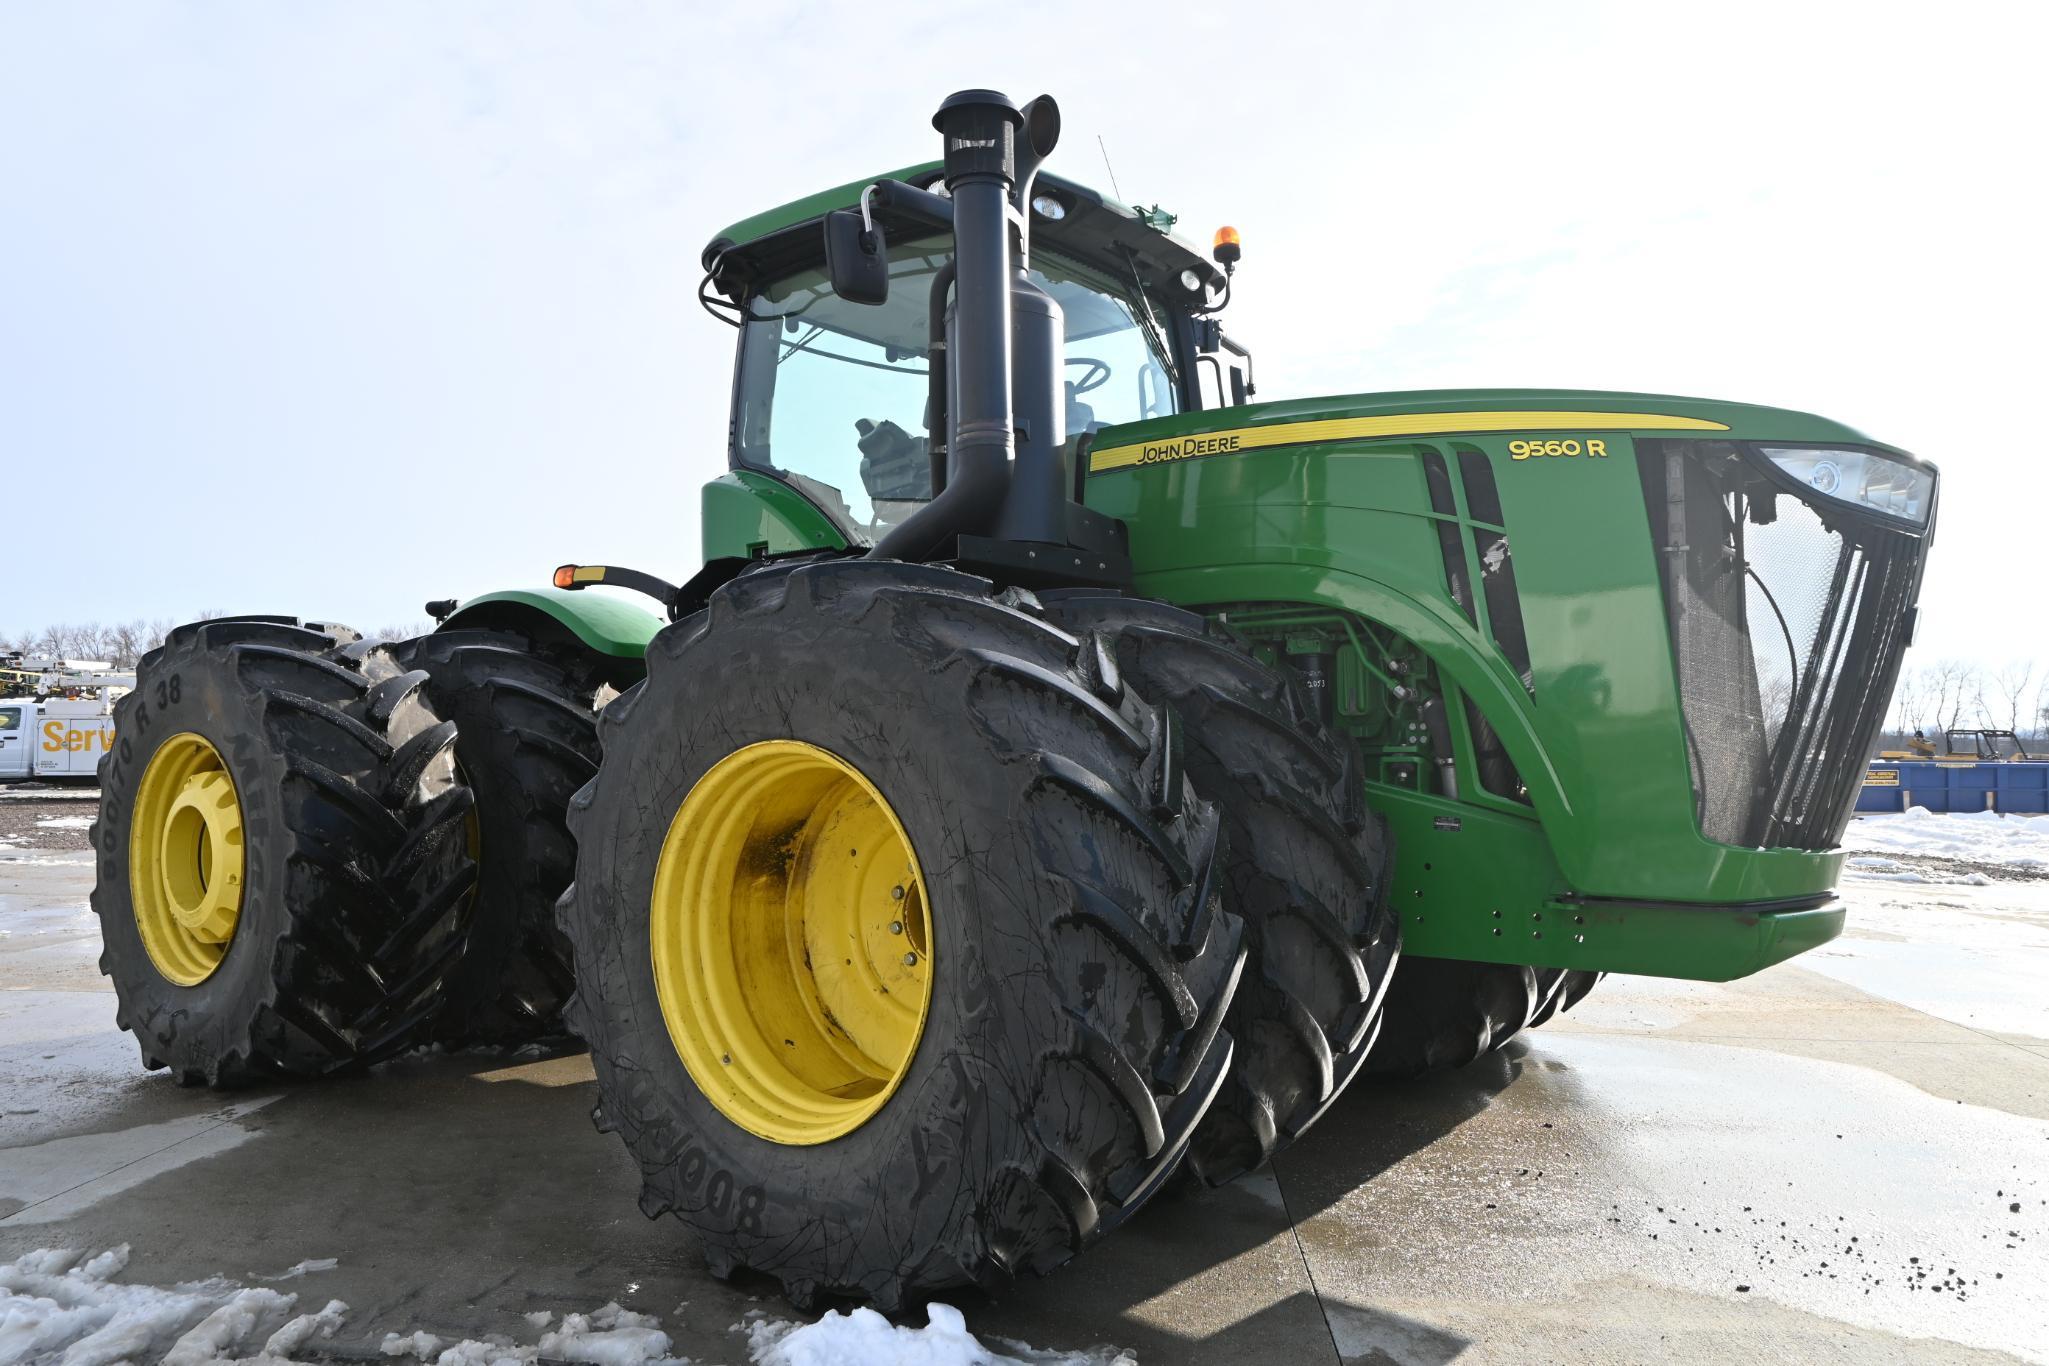 2013 John Deere 9560R 4wd tractor